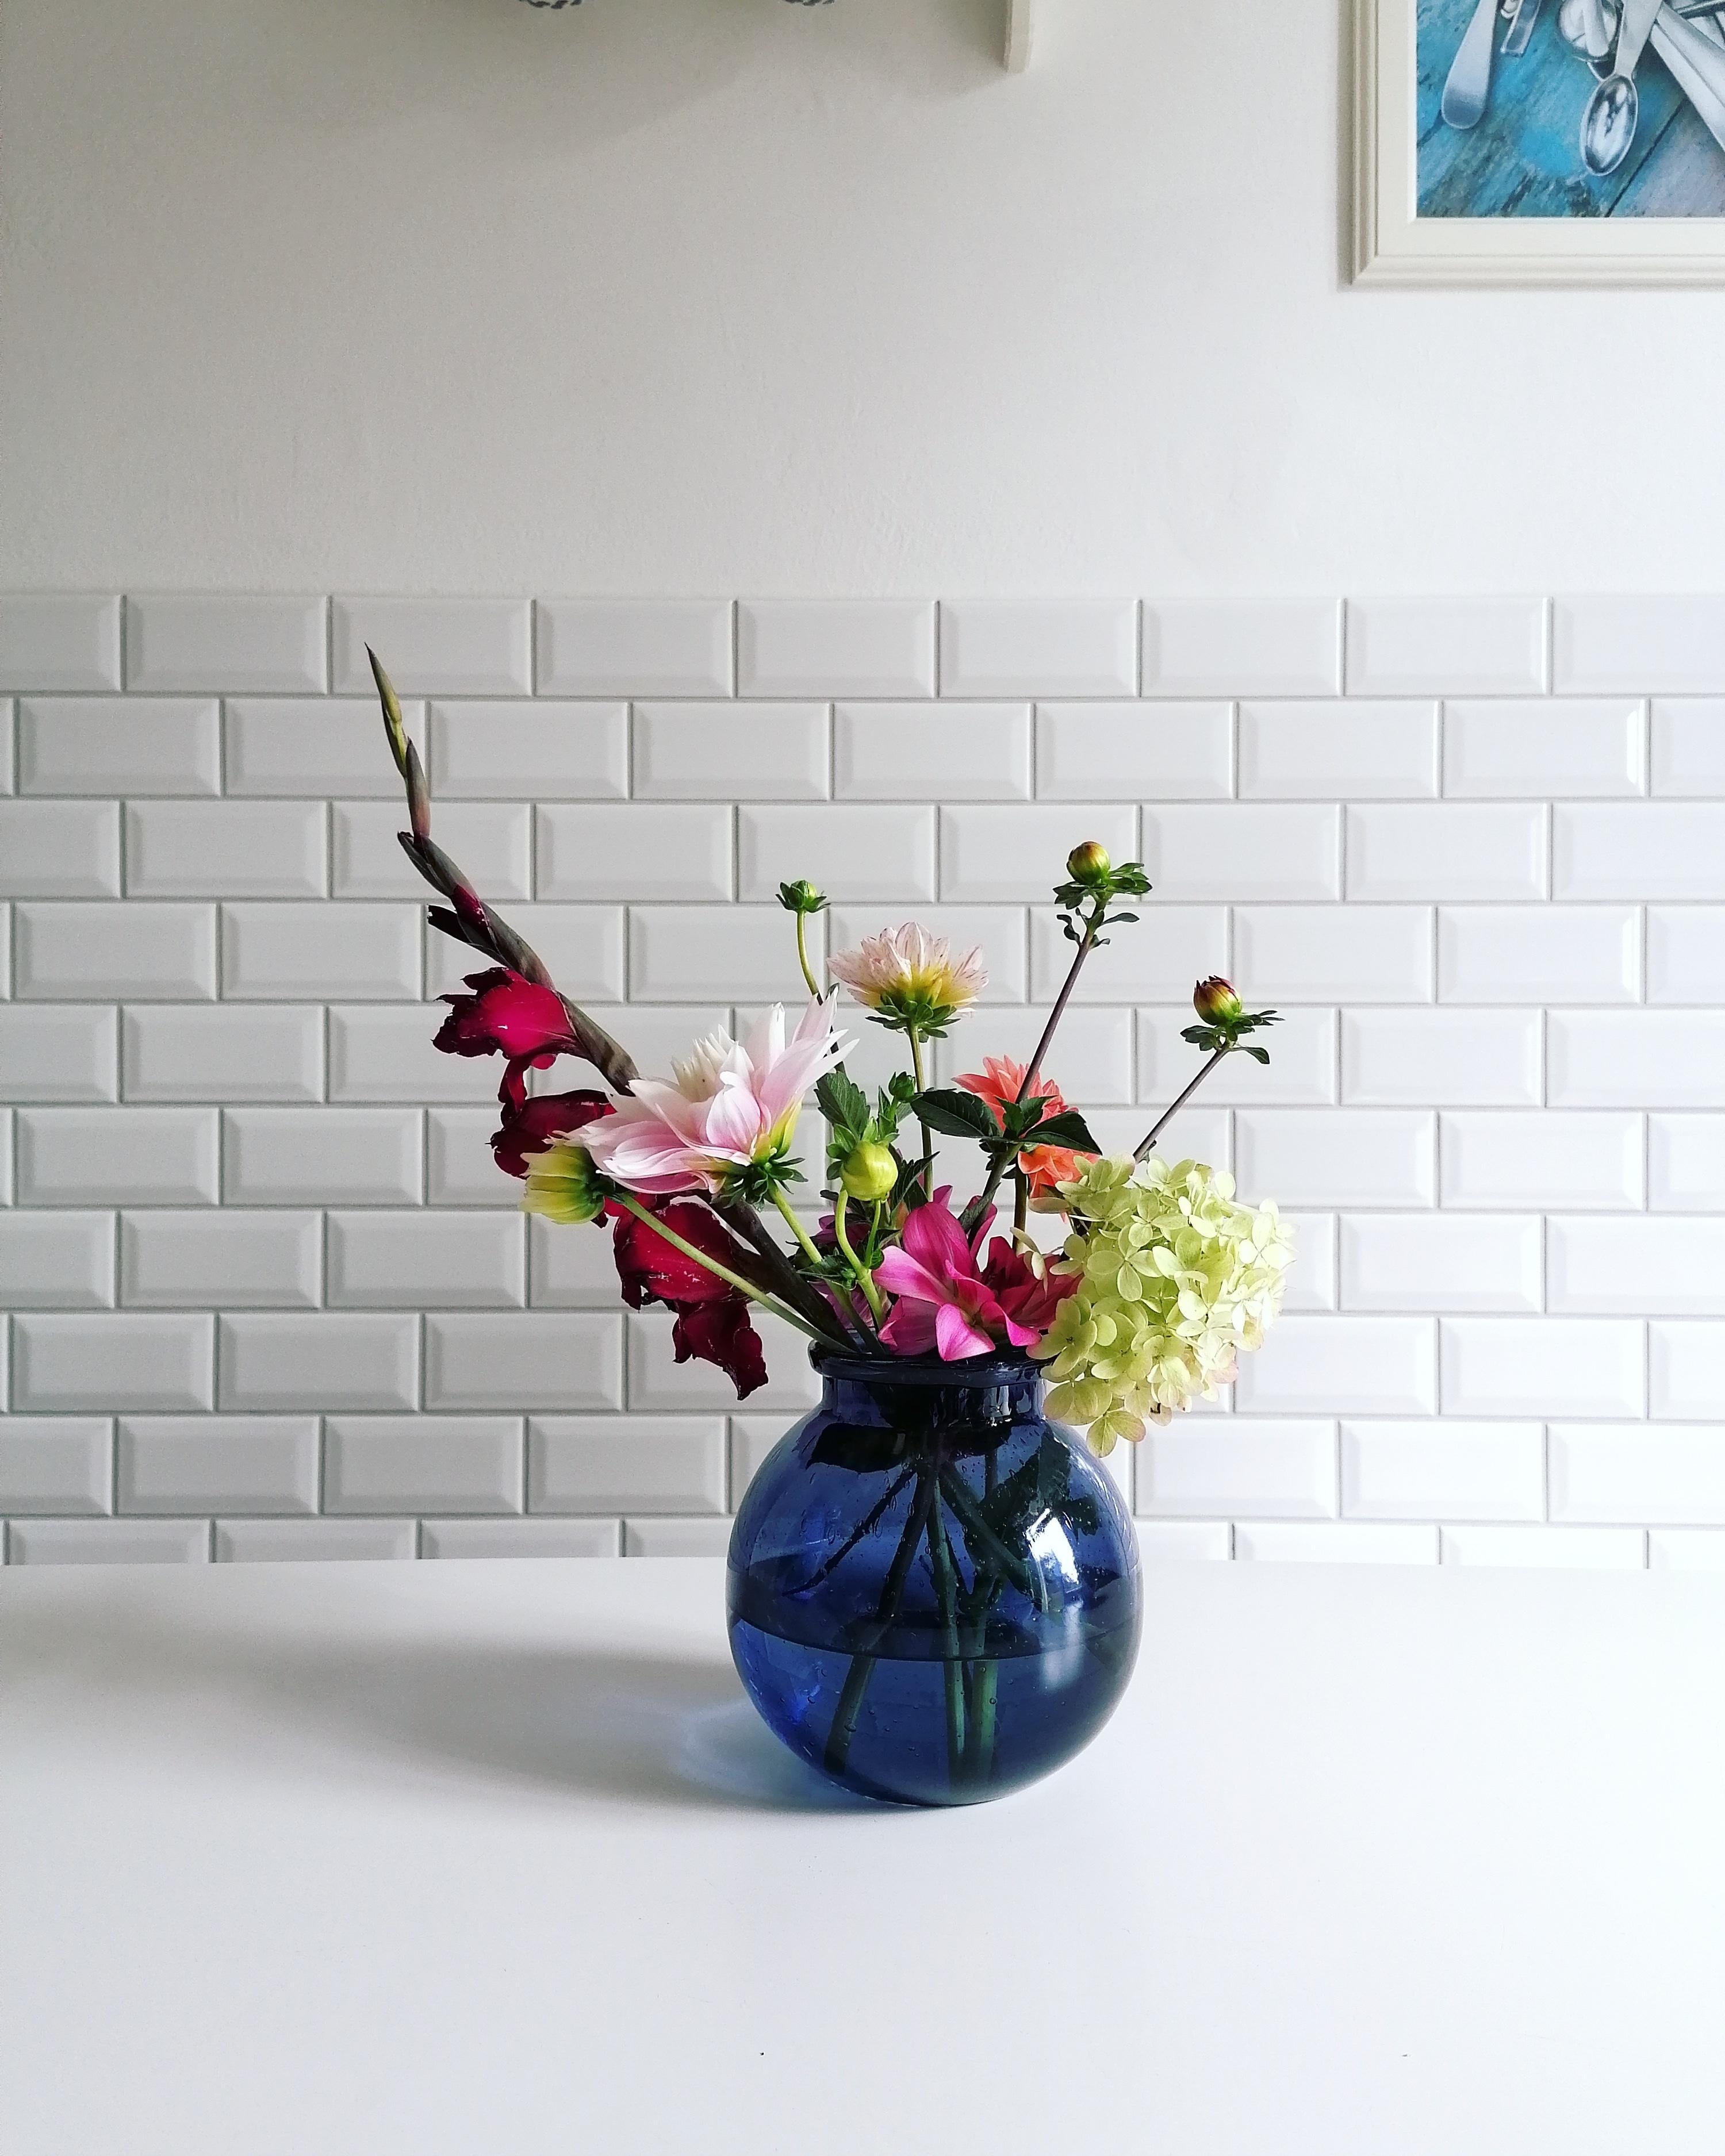 Flower Friday! ♥️ #blumen #vase #küche #metrofliesen #flowerfriday #altbau #altbauliebe 